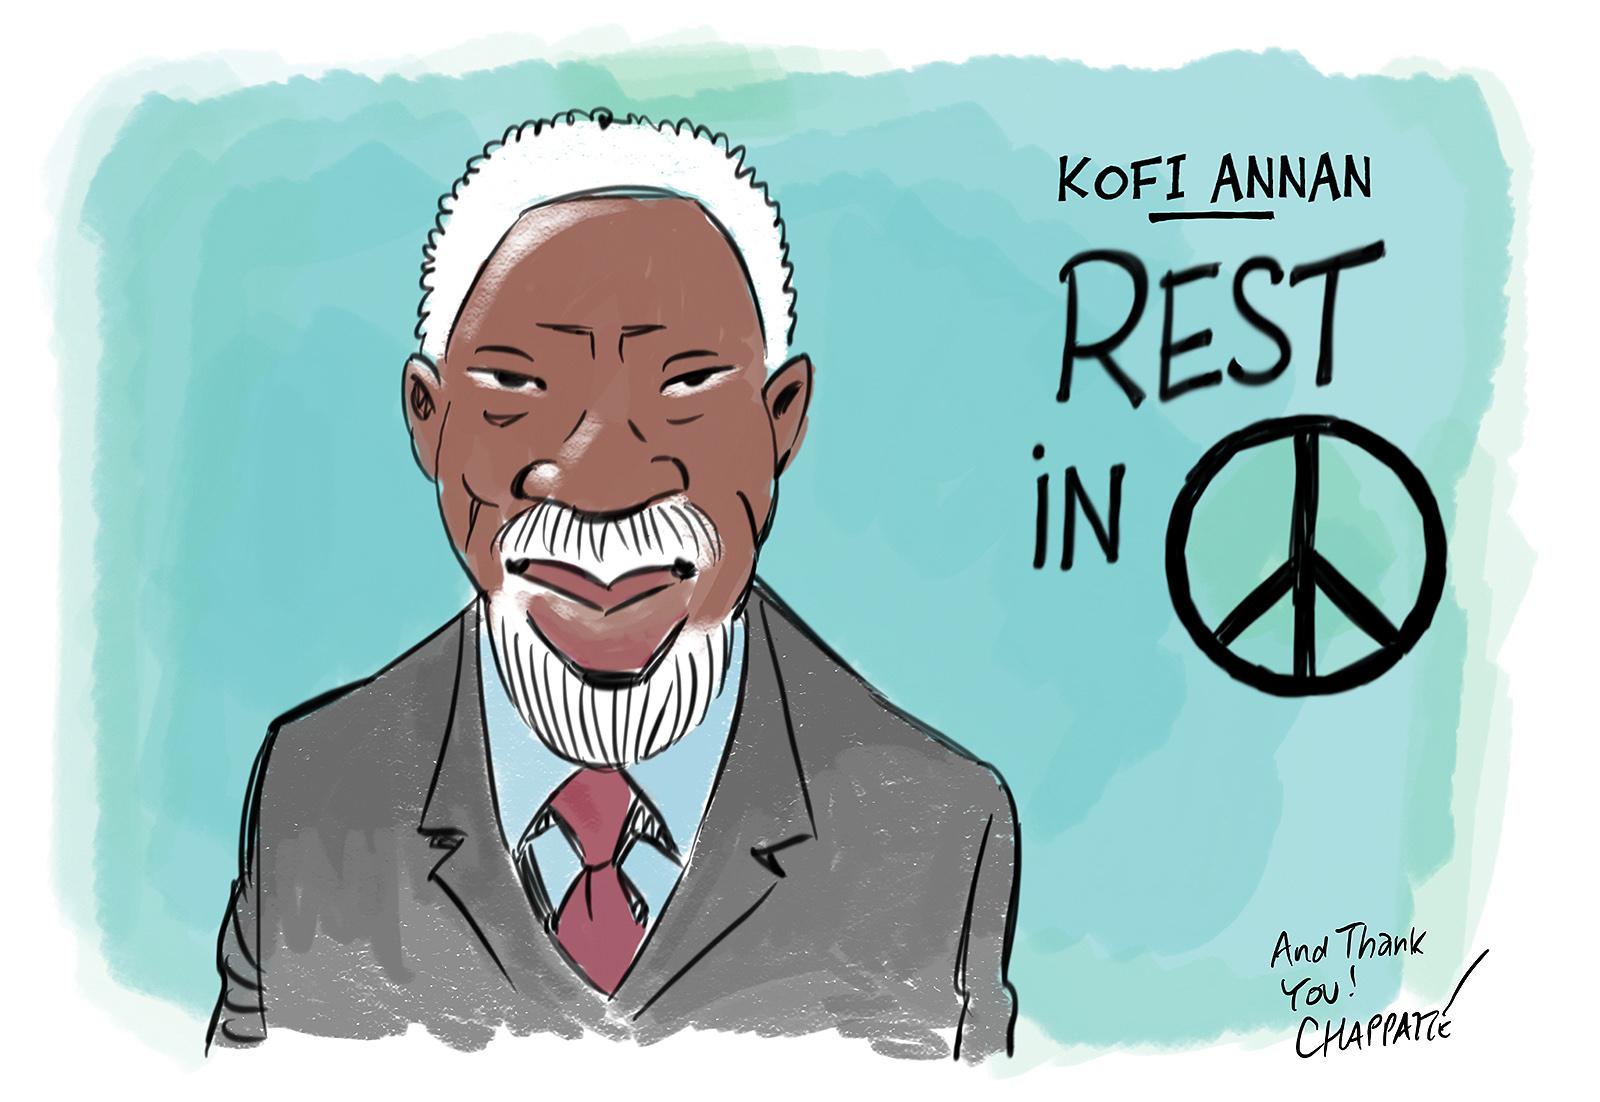 RIP Kofi Annan